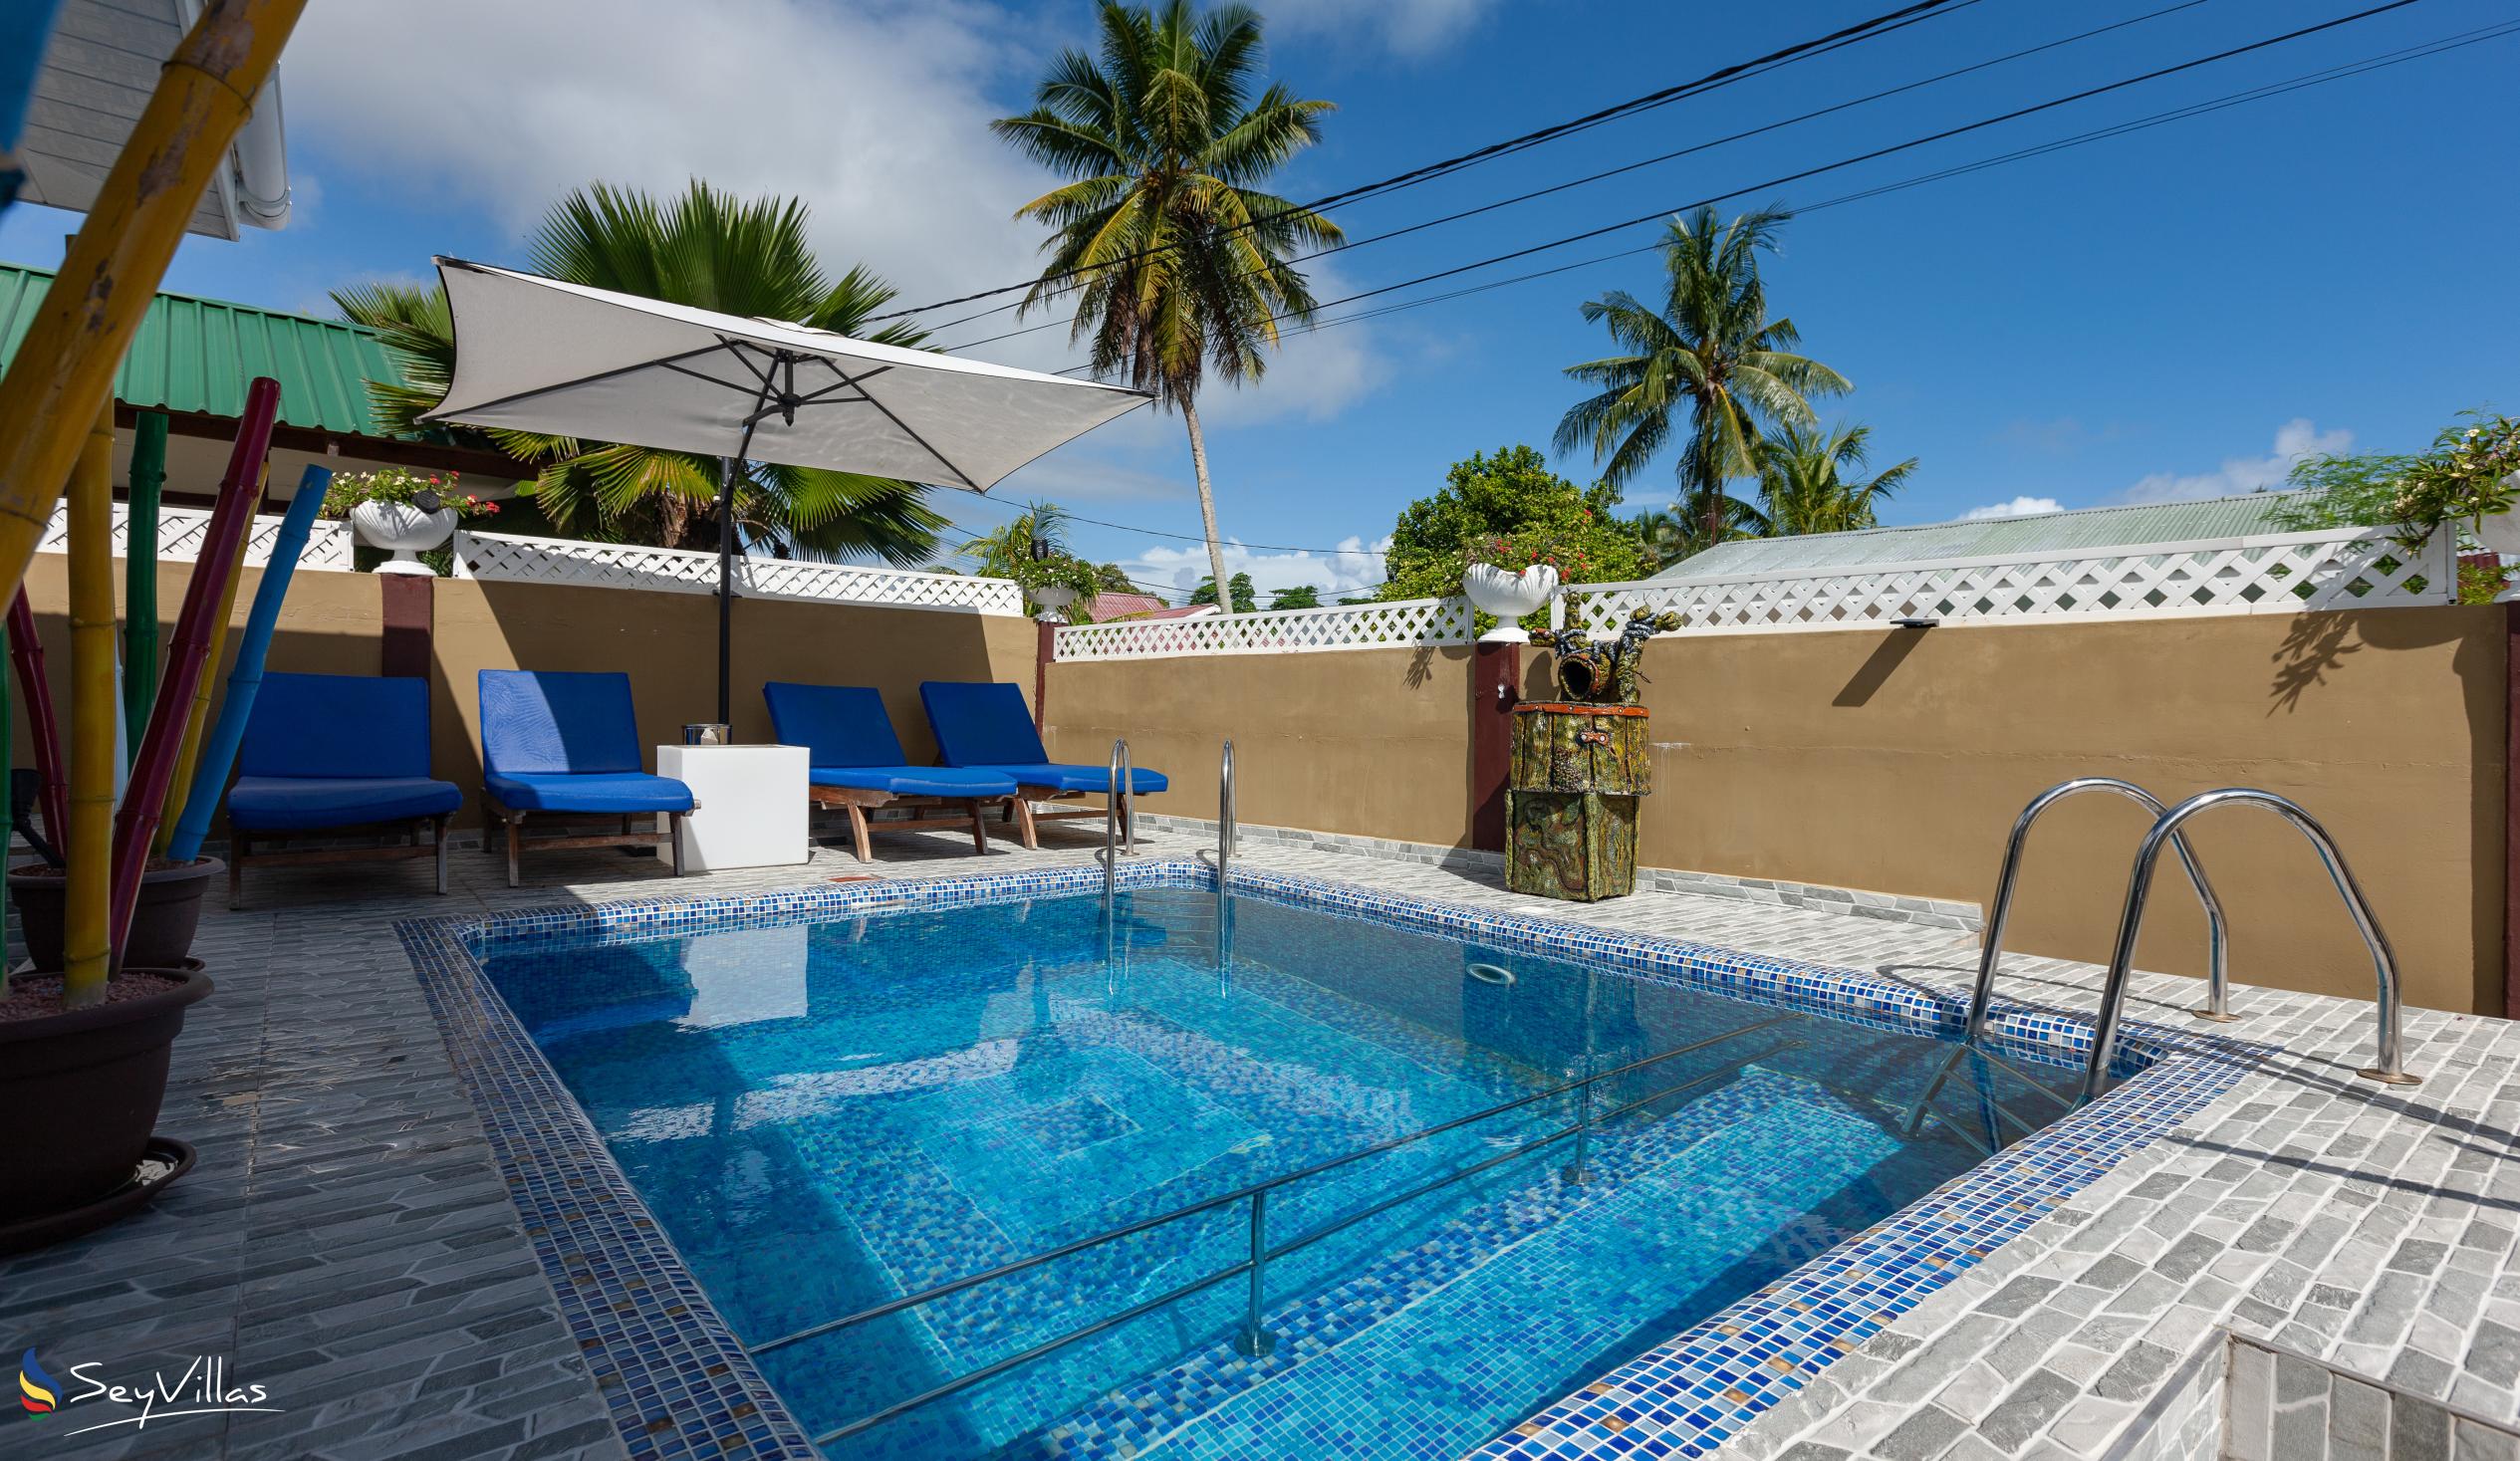 Foto 3: Happy Stay Villa - Aussenbereich - Praslin (Seychellen)